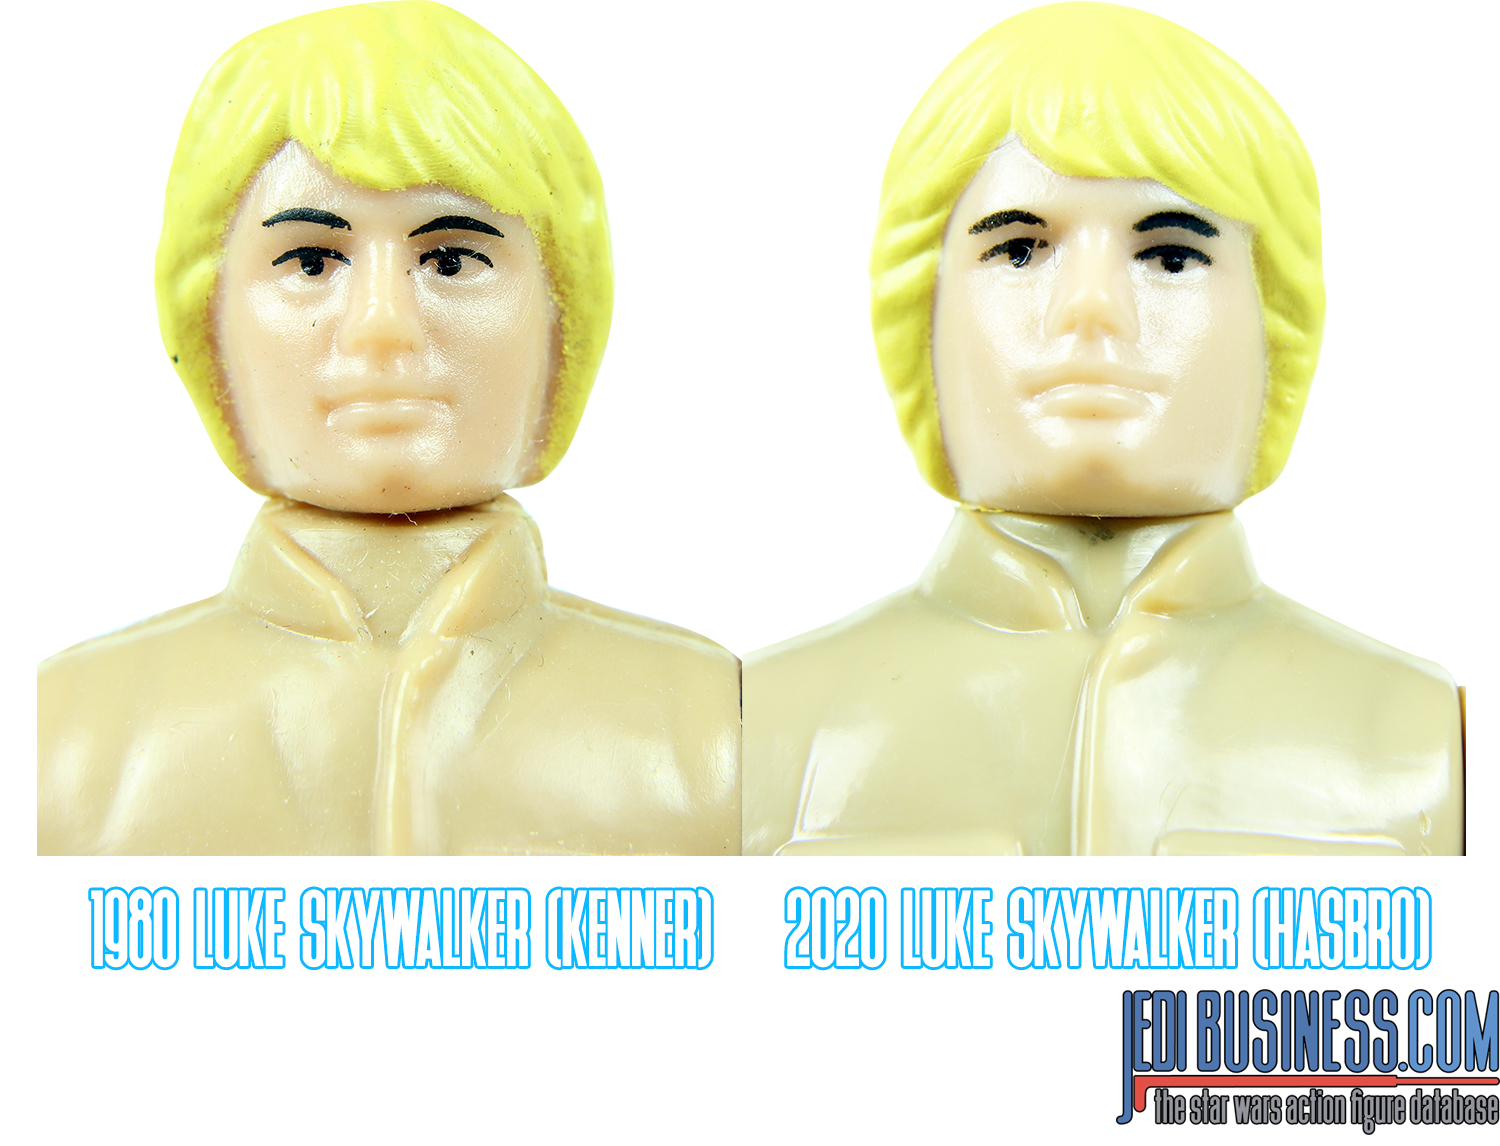 Kenner Luke Skywalker Bespin 1980 vs. Hasbro Luke Skywalker Bespin 2020